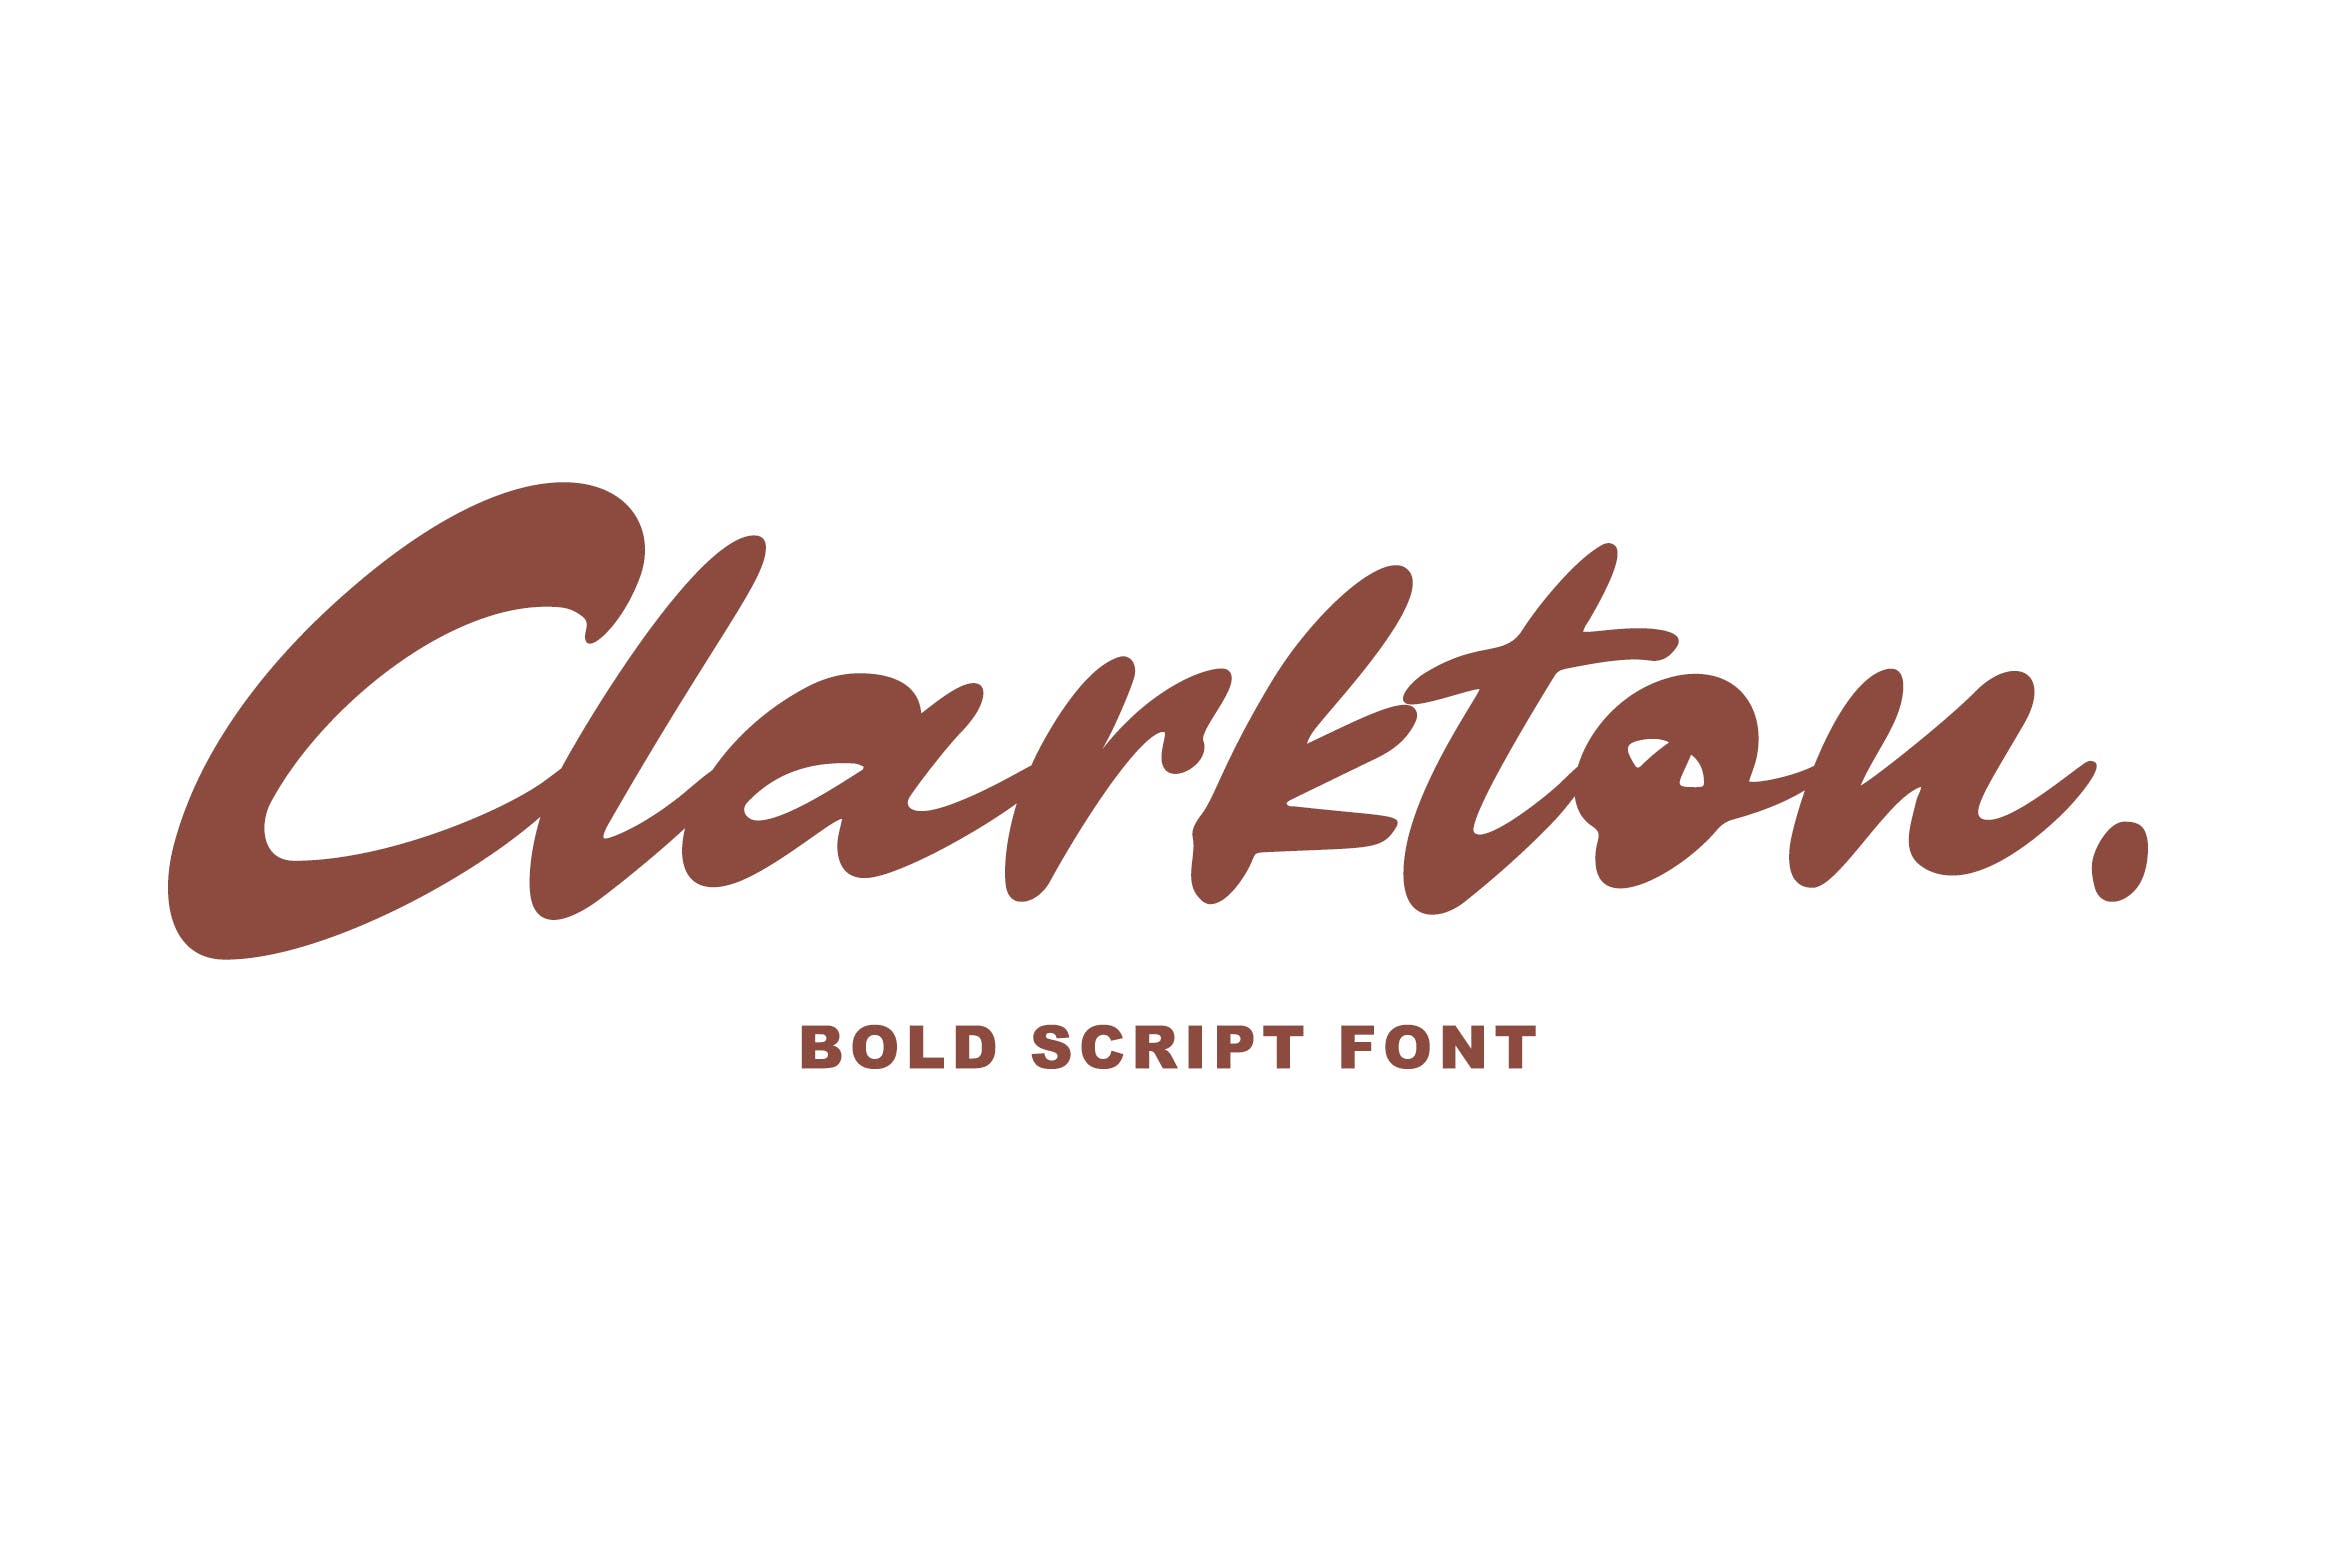 粗体画笔手写英文字体素材库精选 Clarkton – Bold Script Font插图